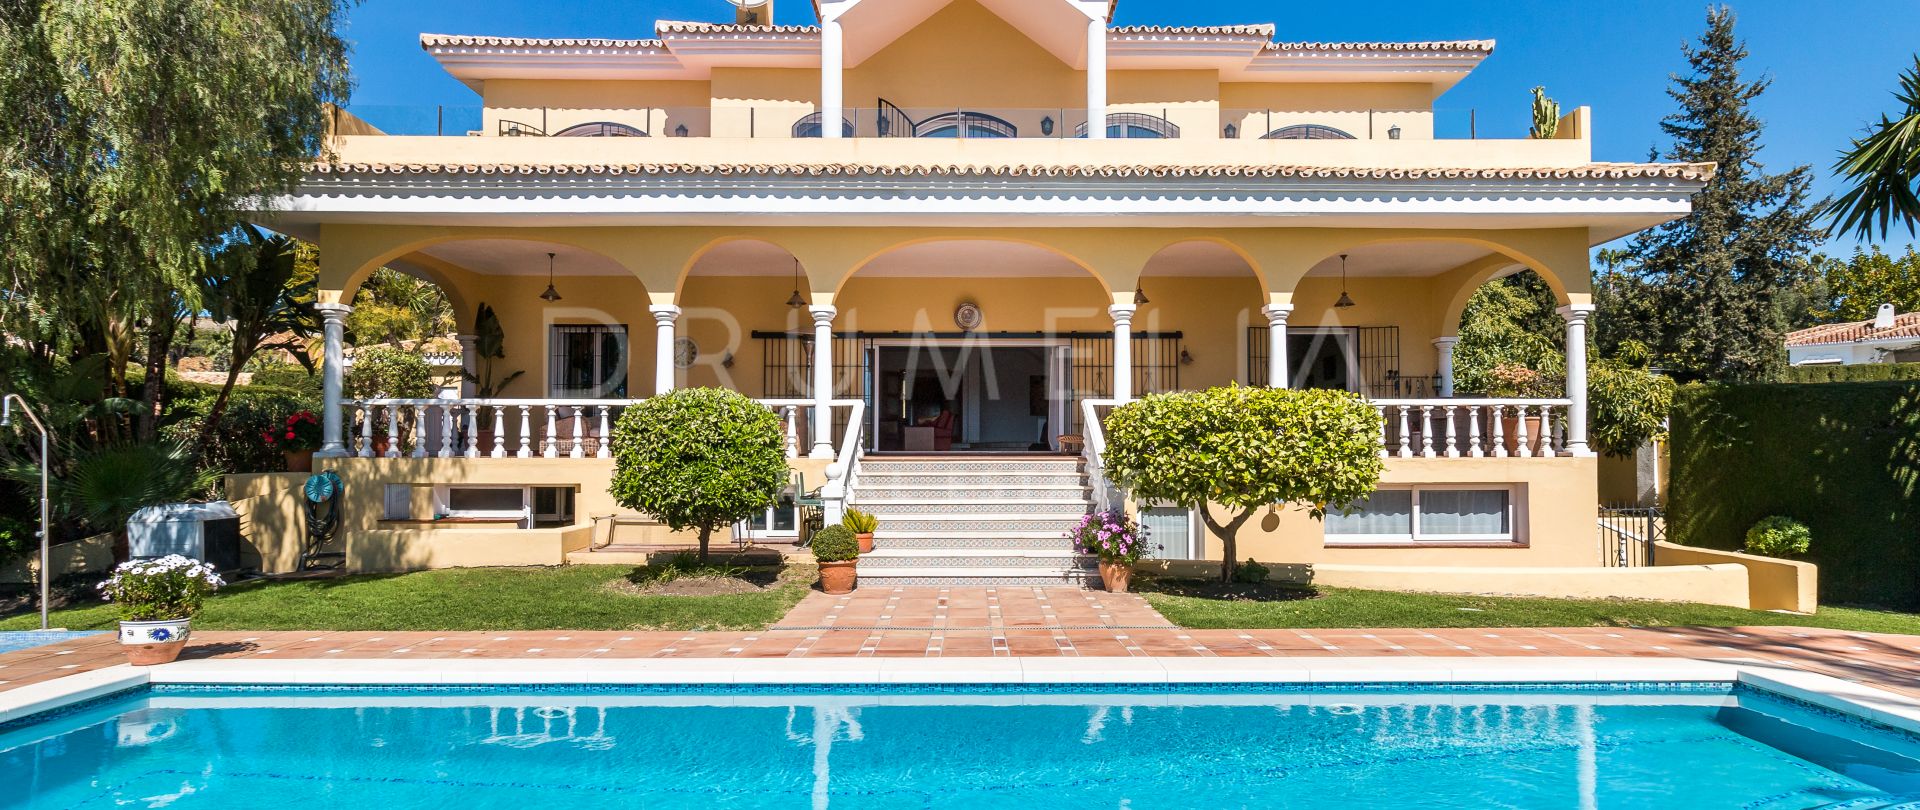 Elegante Luxus-Villa am Mittelmeer, Paraiso Alto, Benahavis